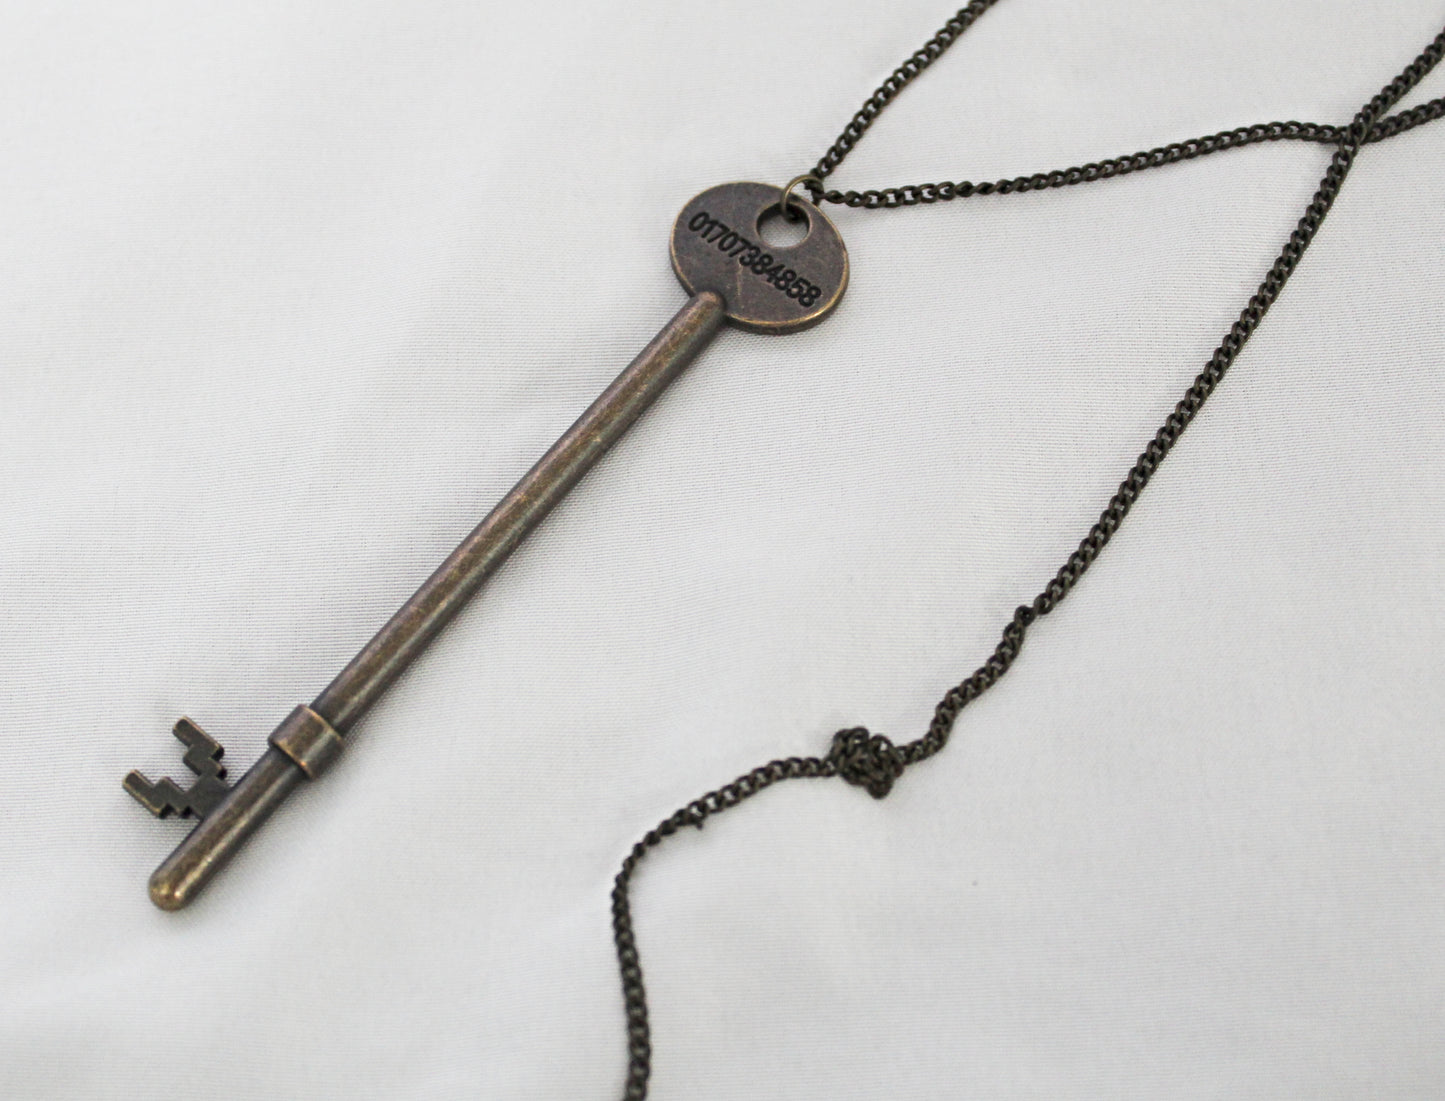 Large Key Necklace